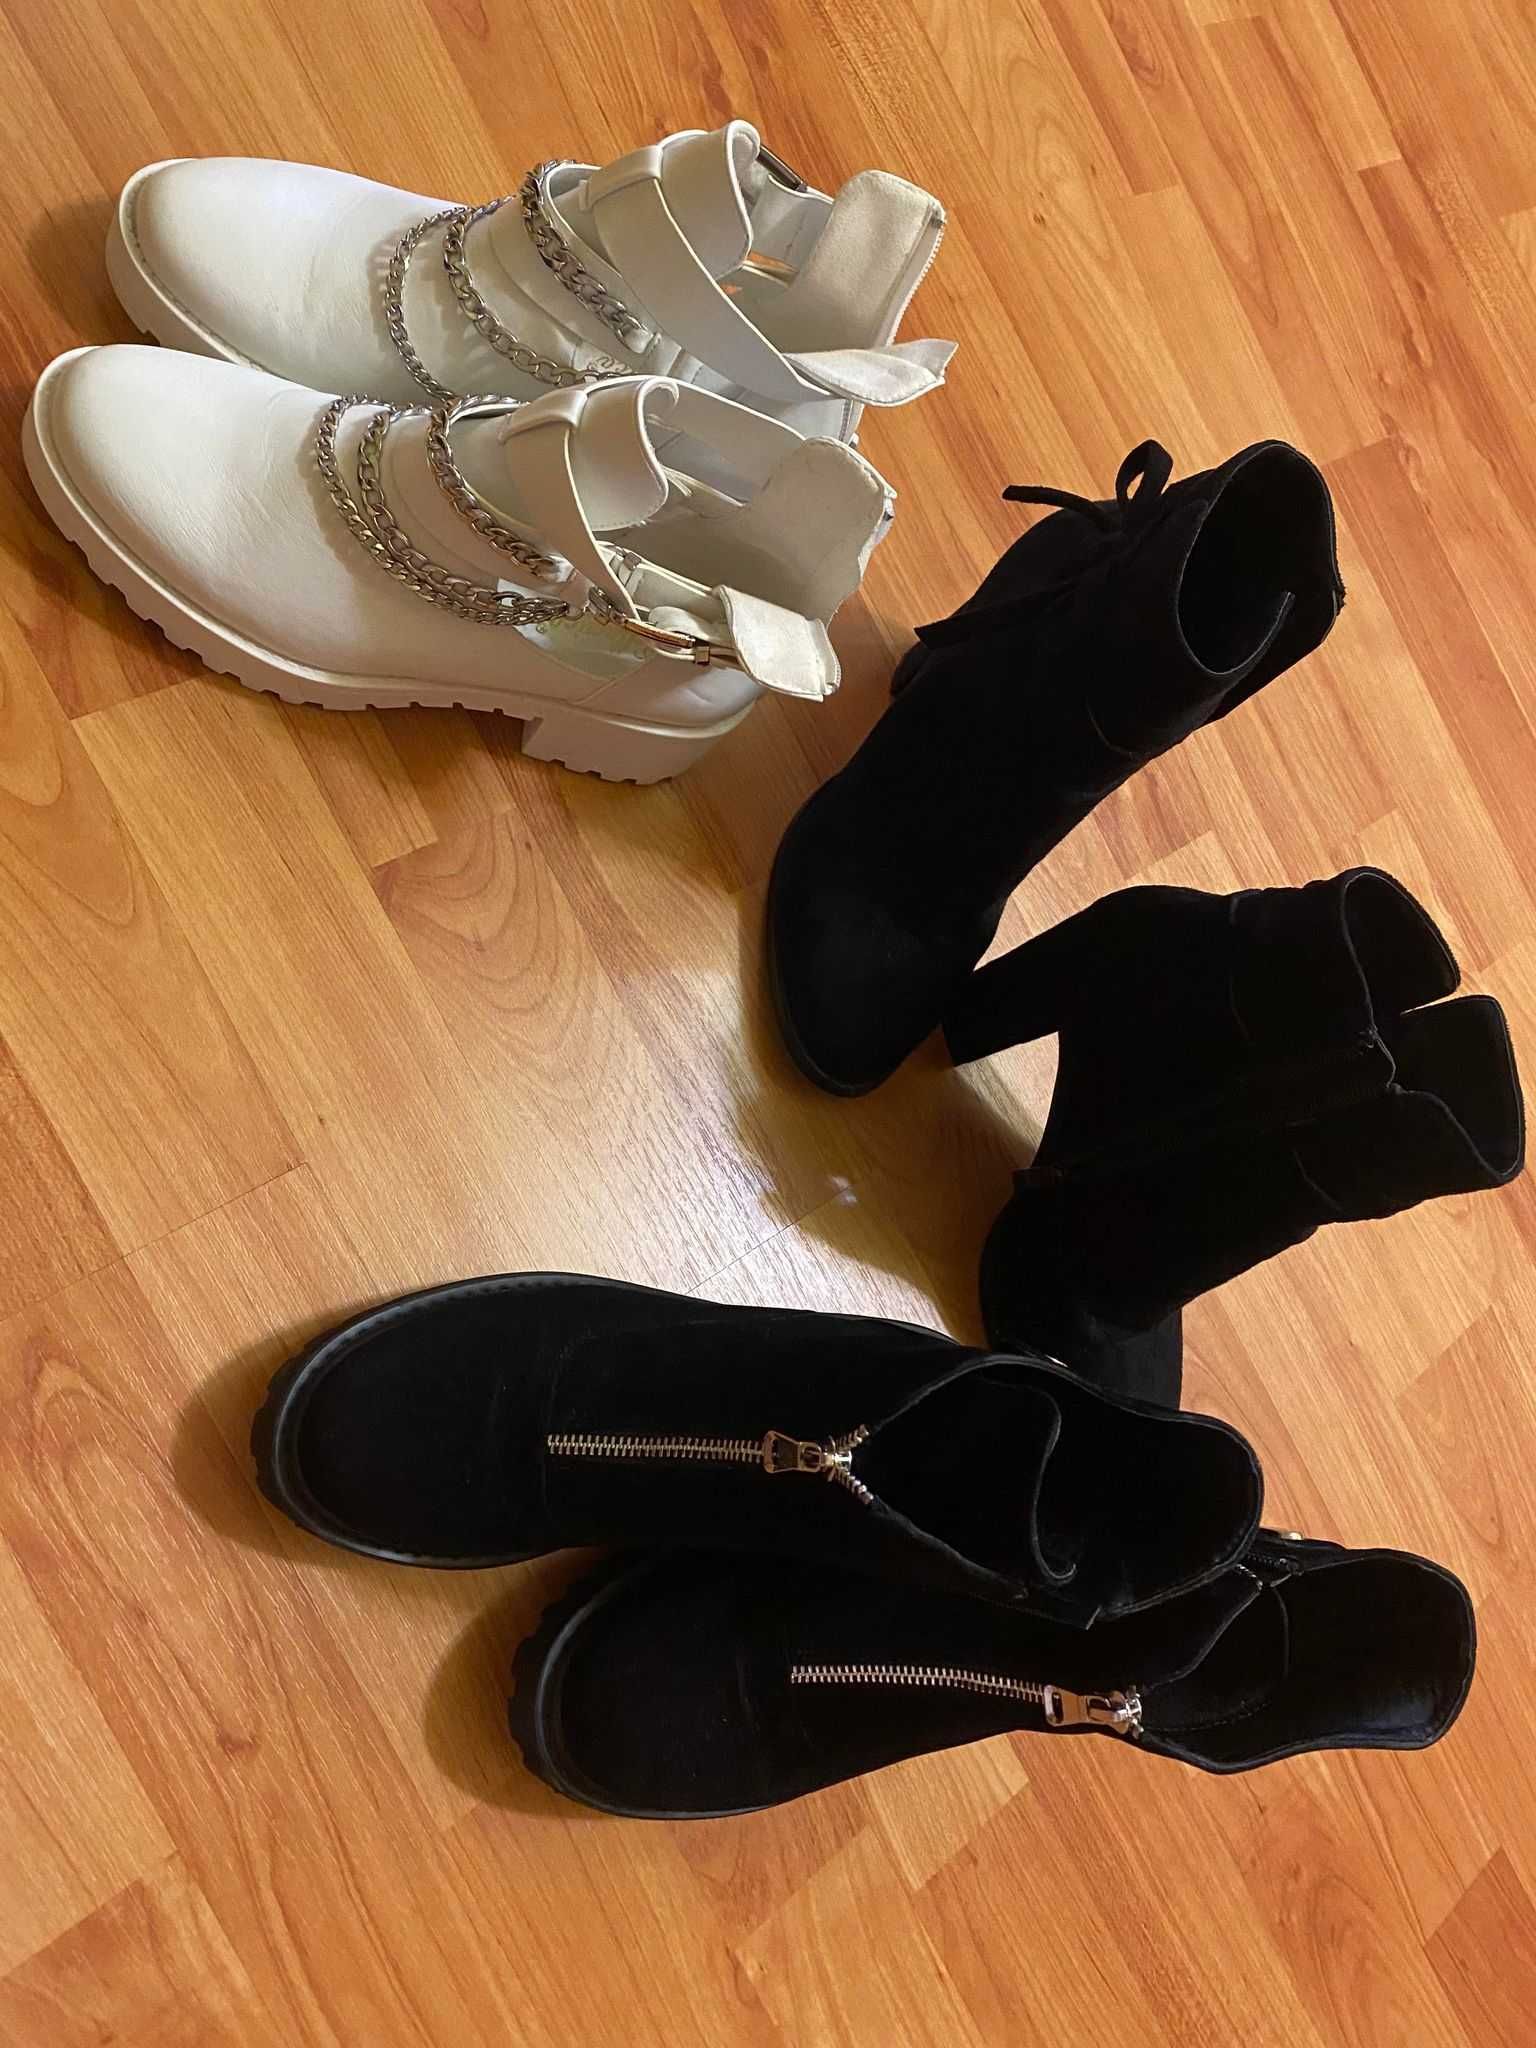 Sandale, pantofi, ghete, cizme